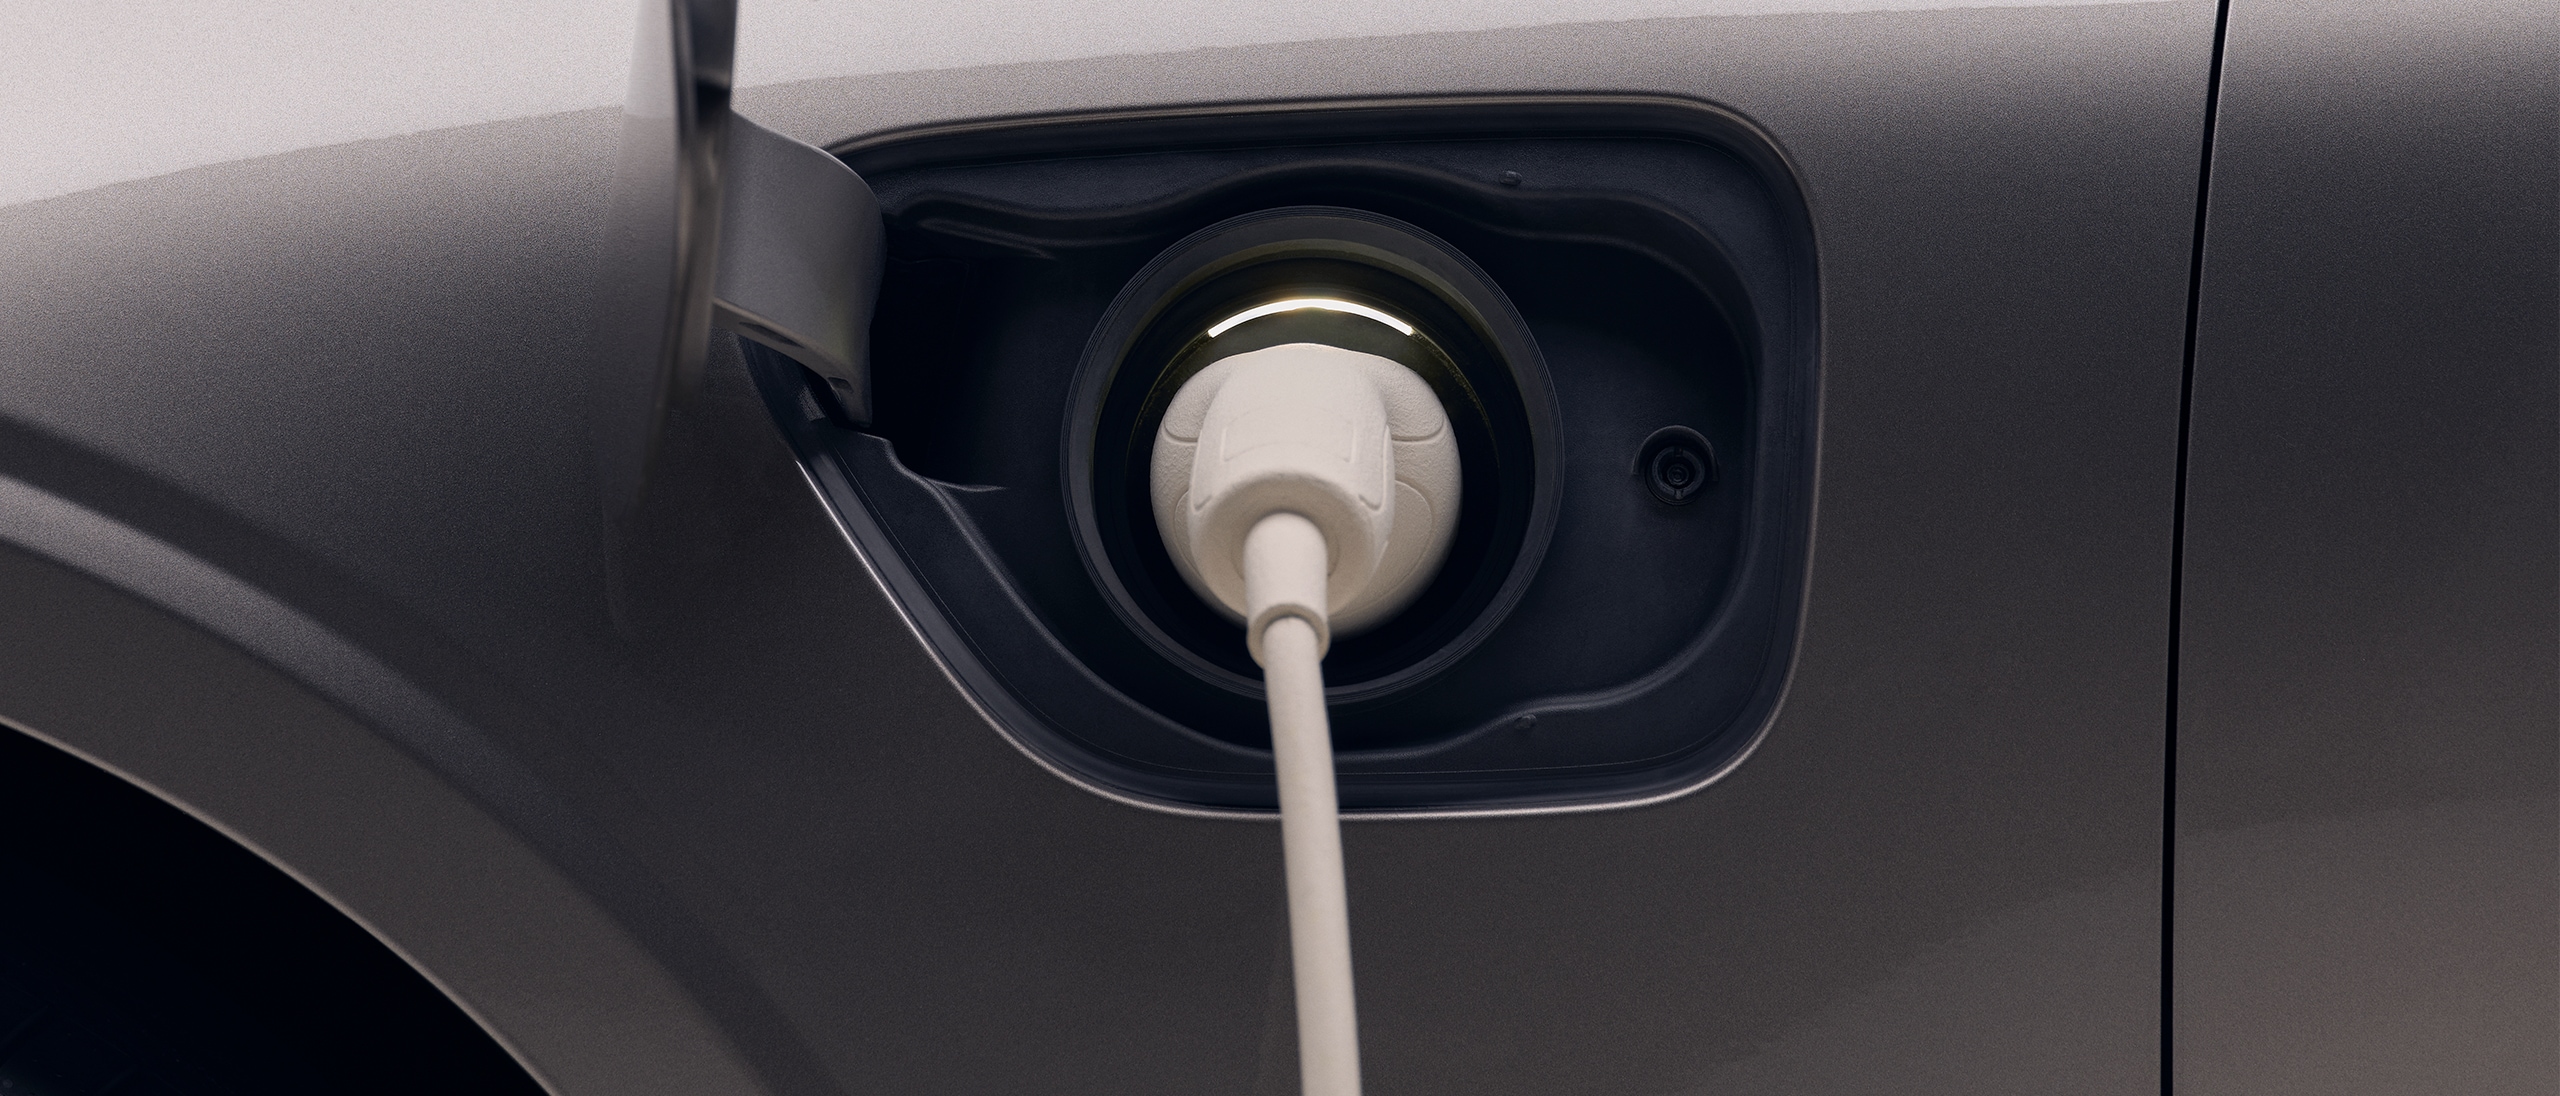 Détail de l'avant gauche d'une nouvelle Volvo électrique dark grey, avec un câble de recharge blanc inséré dans le port de chargement du véhicule.